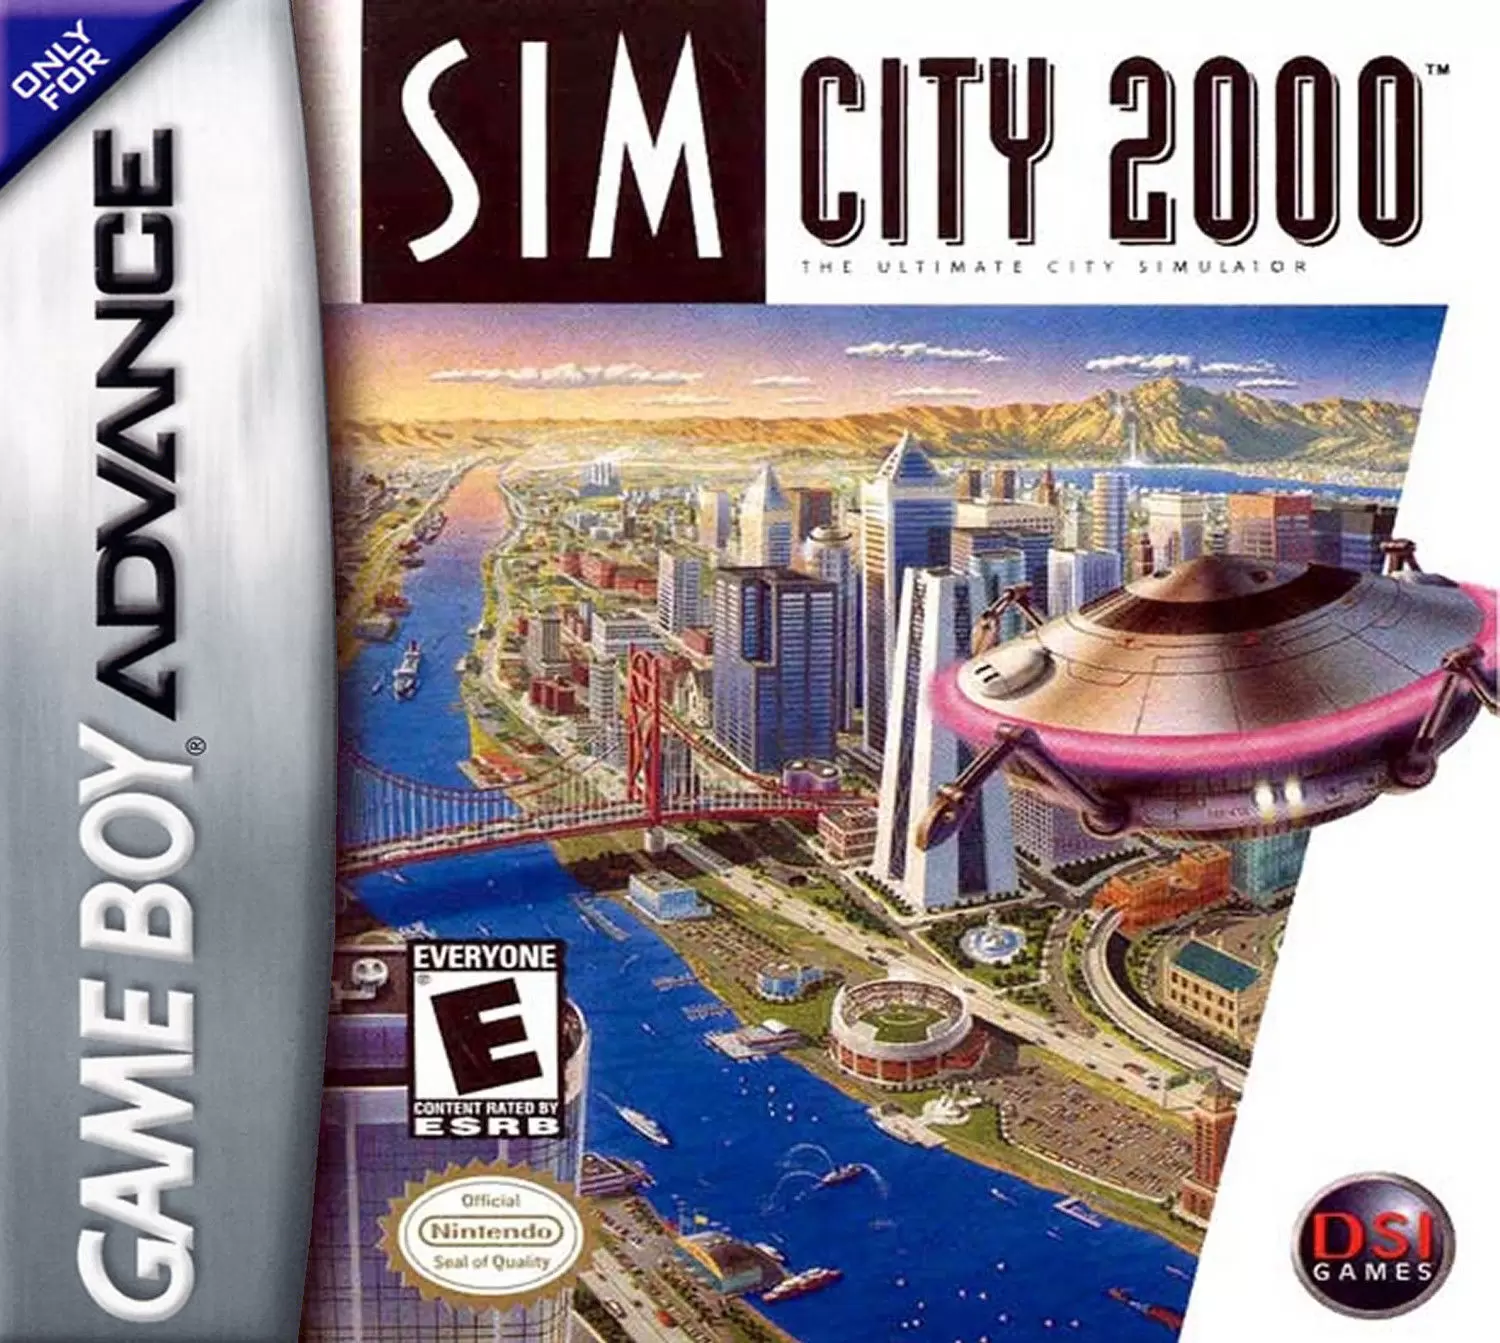 Game Boy Advance Games - SimCity 2000